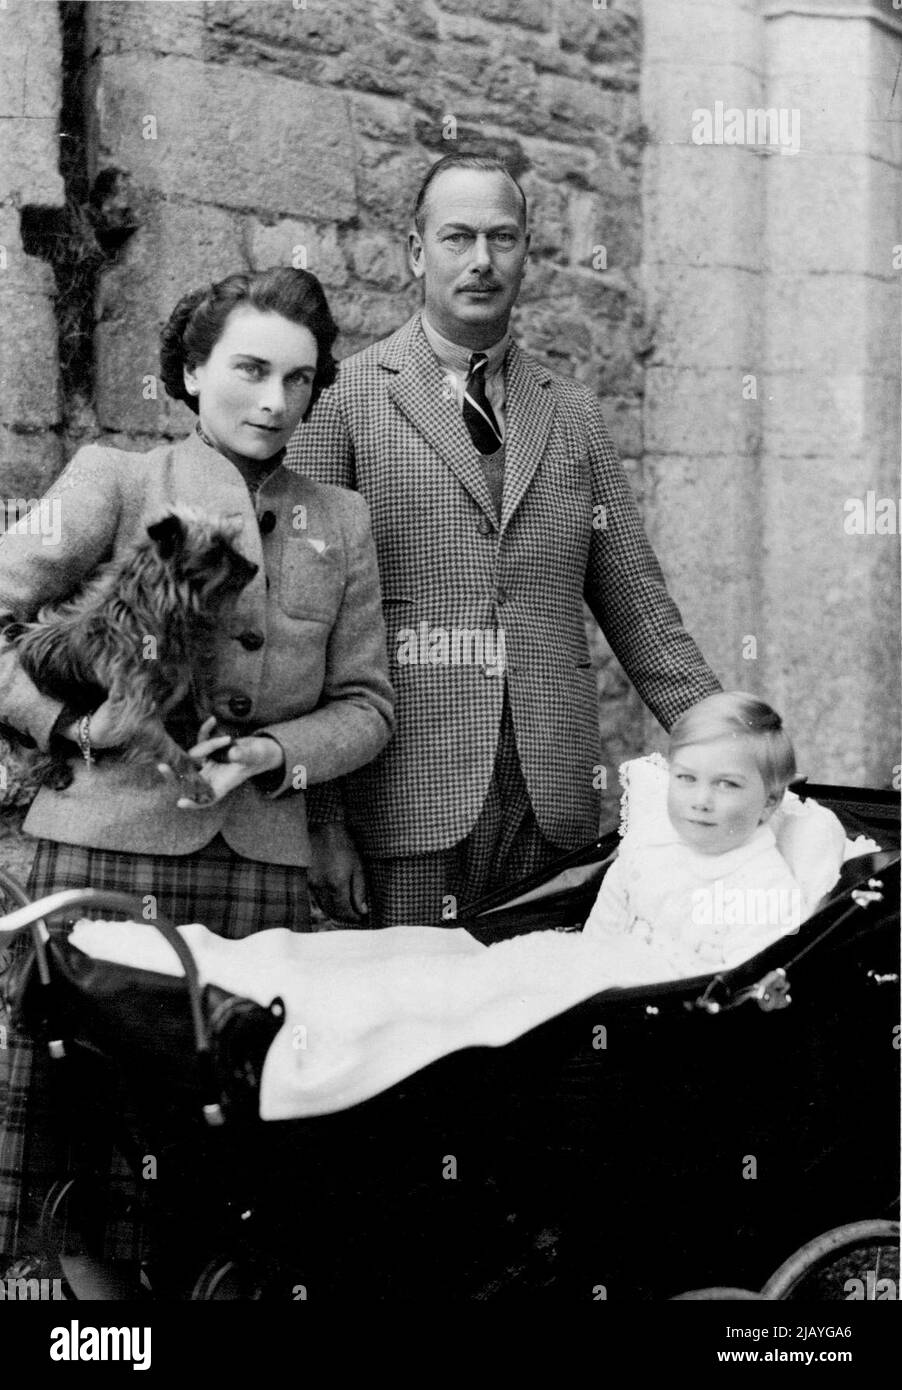 Compleanno del Principe Guglielmo -- Una nuova fotografia scattata appositamente per il compleanno del Principe Guglielmo che avrà 2 anni sabato 18 dicembre. È mostrato con i suoi genitori T.R.H. Il duca e la duchessa di Gloucester. Marzo 12, 1943. (Foto di Harris's Picture Agency). Foto Stock